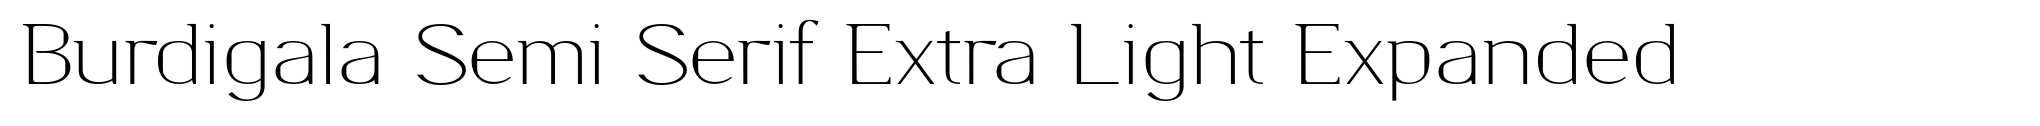 Burdigala Semi Serif Extra Light Expanded image